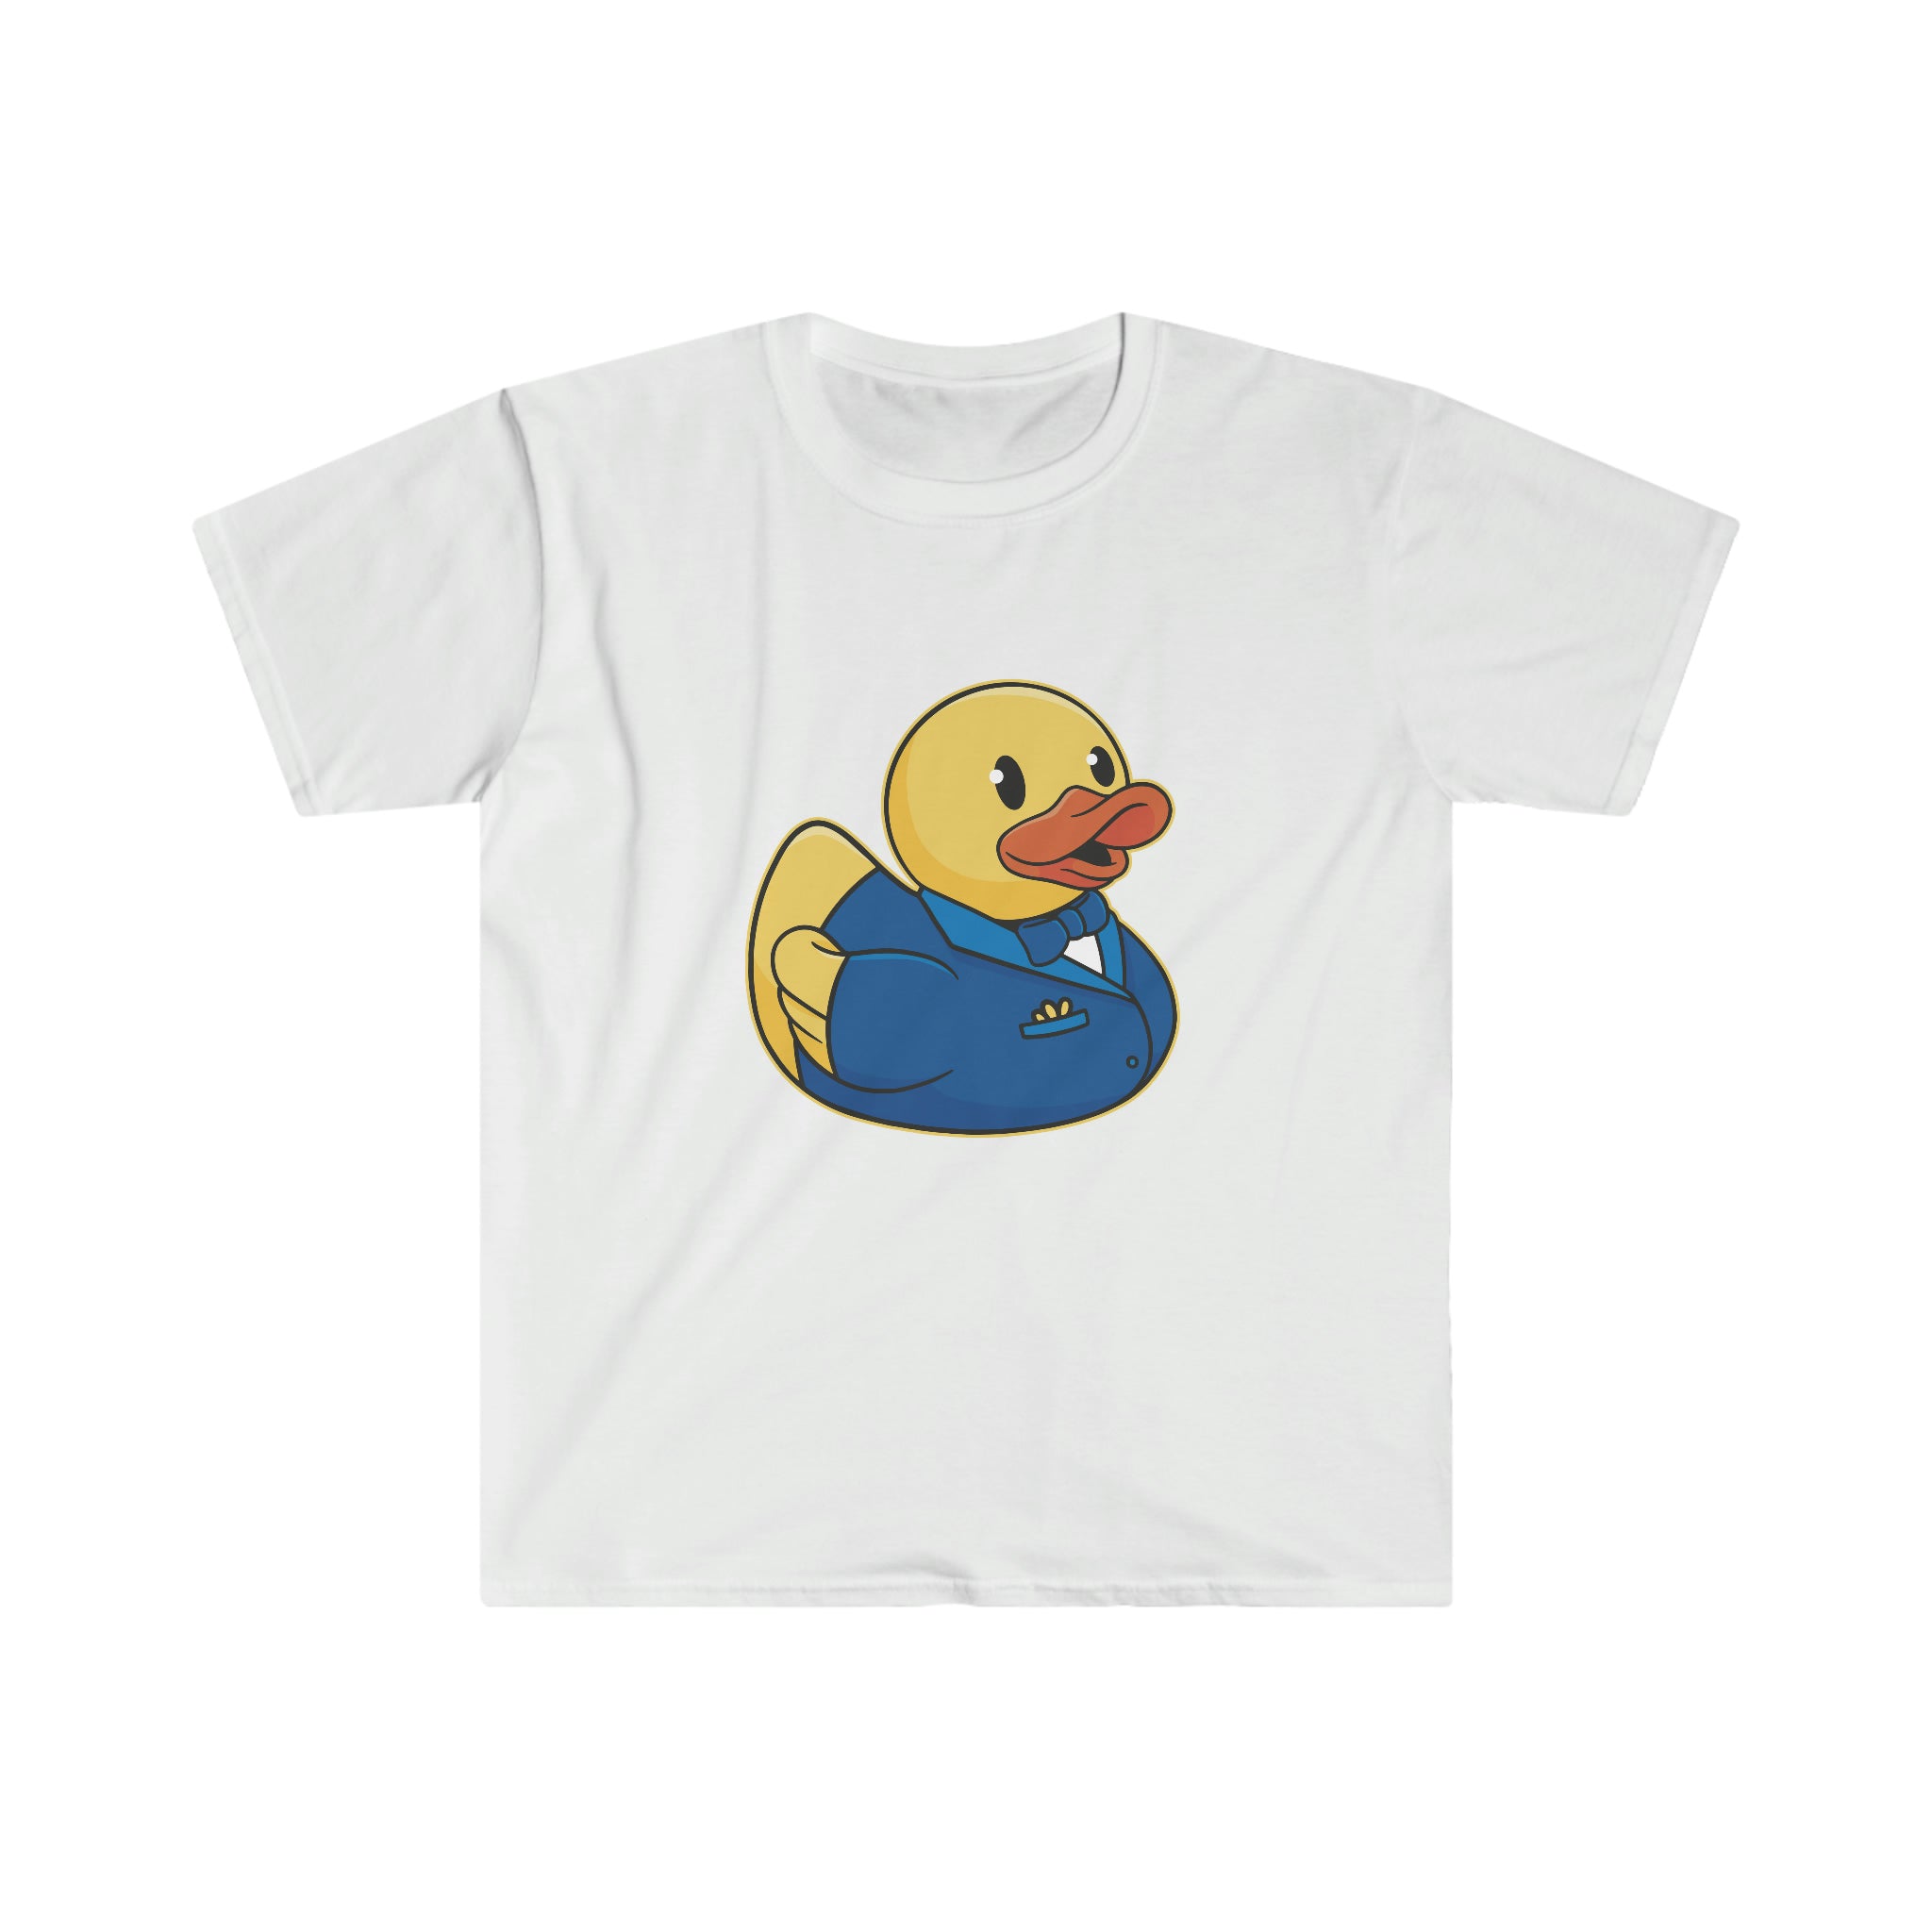 A trendy white Groom Duck T-Shirt featuring a playful cartoon duck.